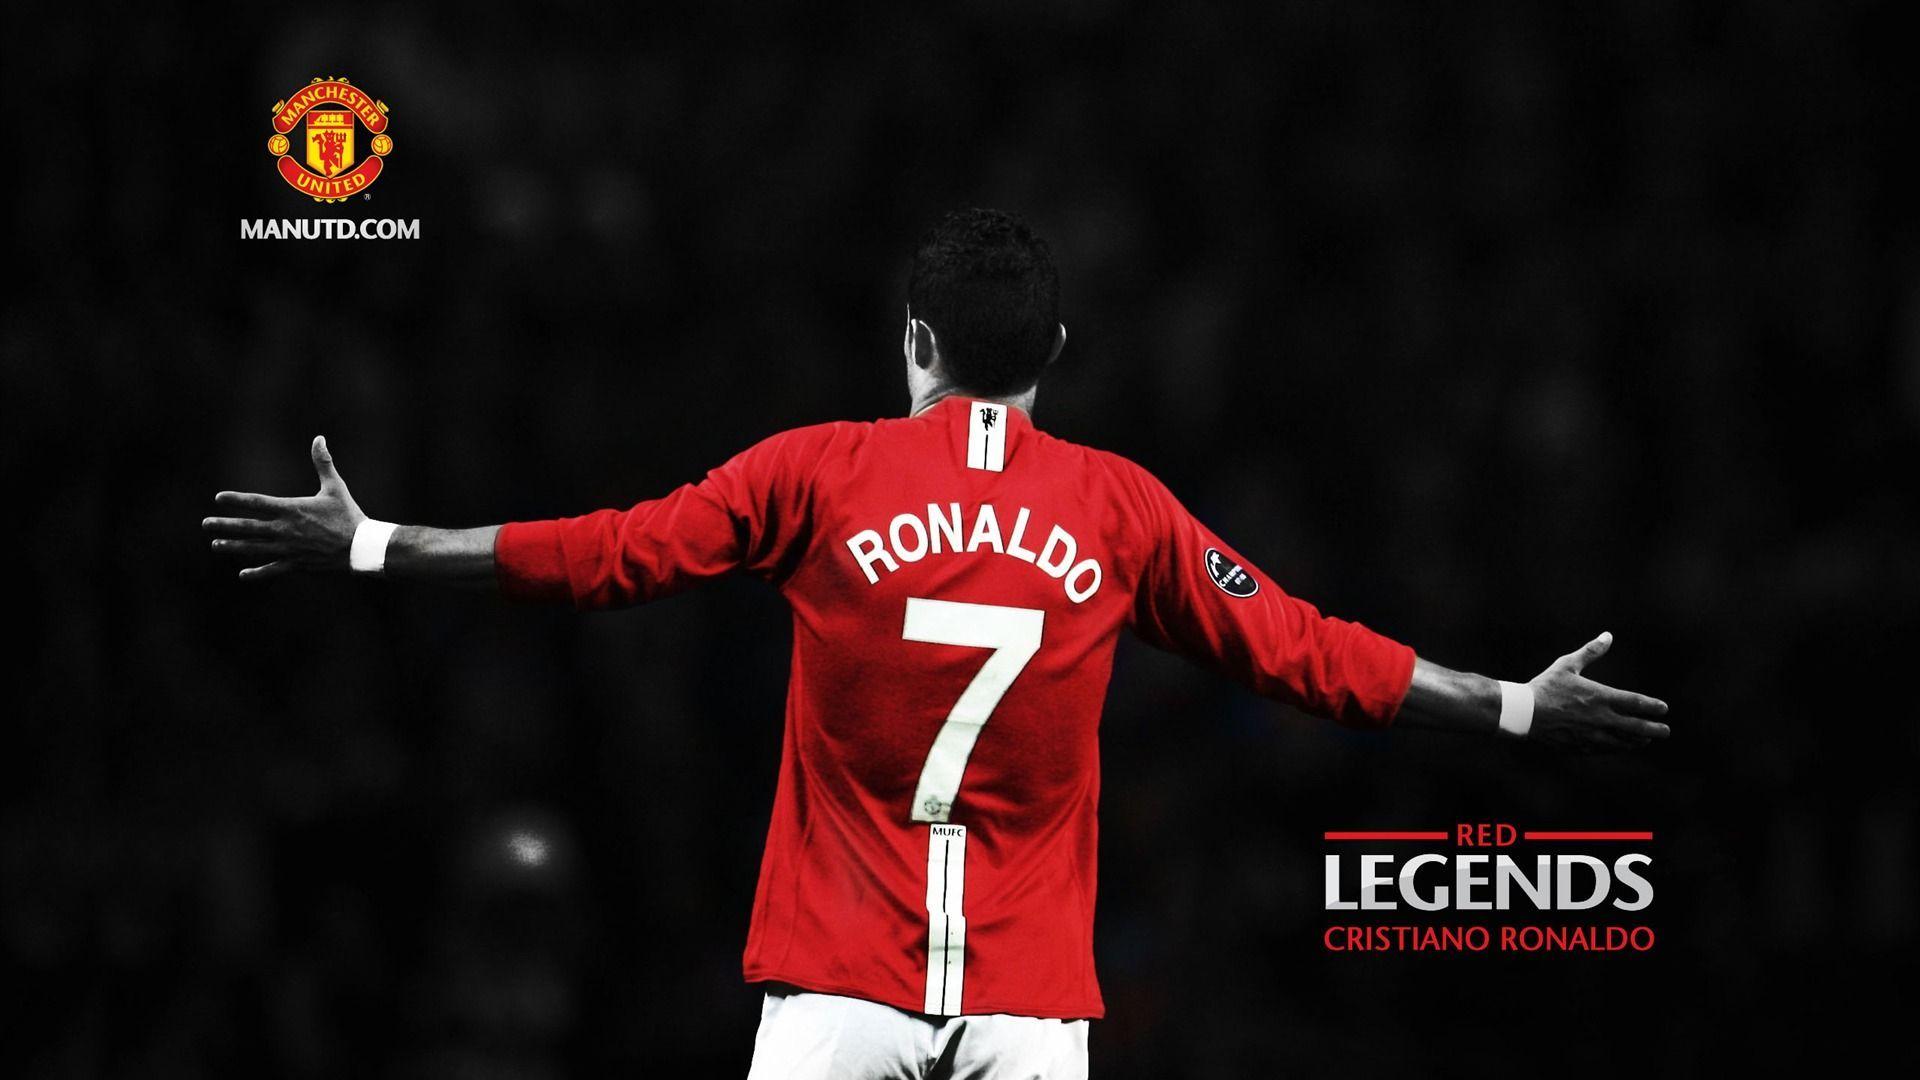 Cristiano Ronaldo Manchester United HD Wallpaper. HD Wallpaper. Manchester united legends, Manchester united wallpaper, Manchester united logo